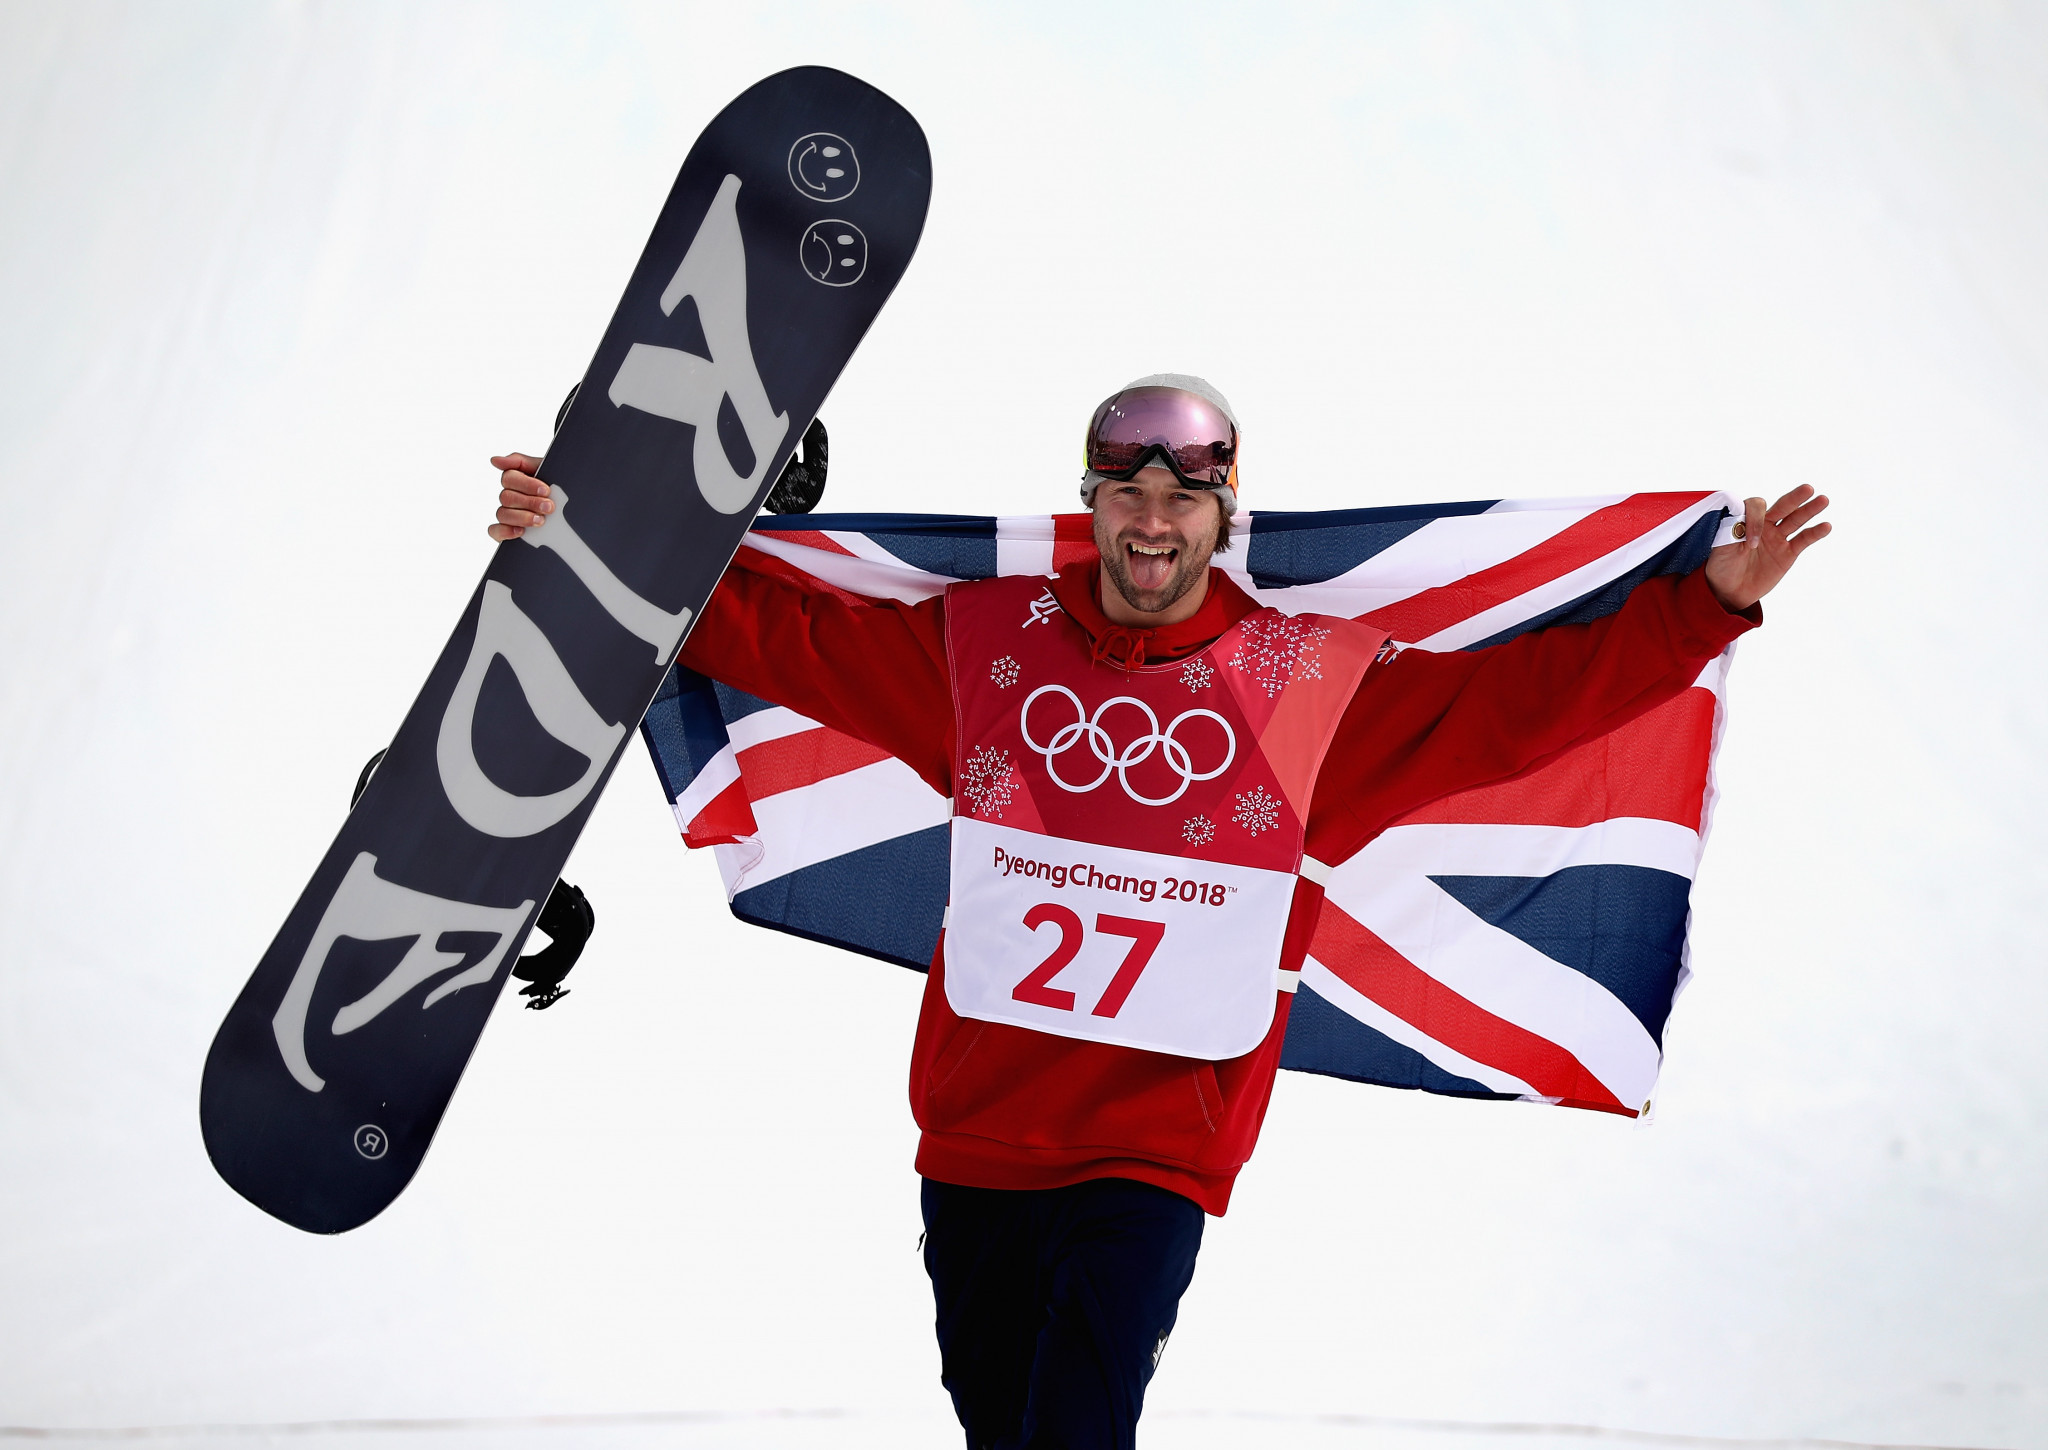 Billy Morgan won bronze at Pyeongchang 2018 ©Getty Images